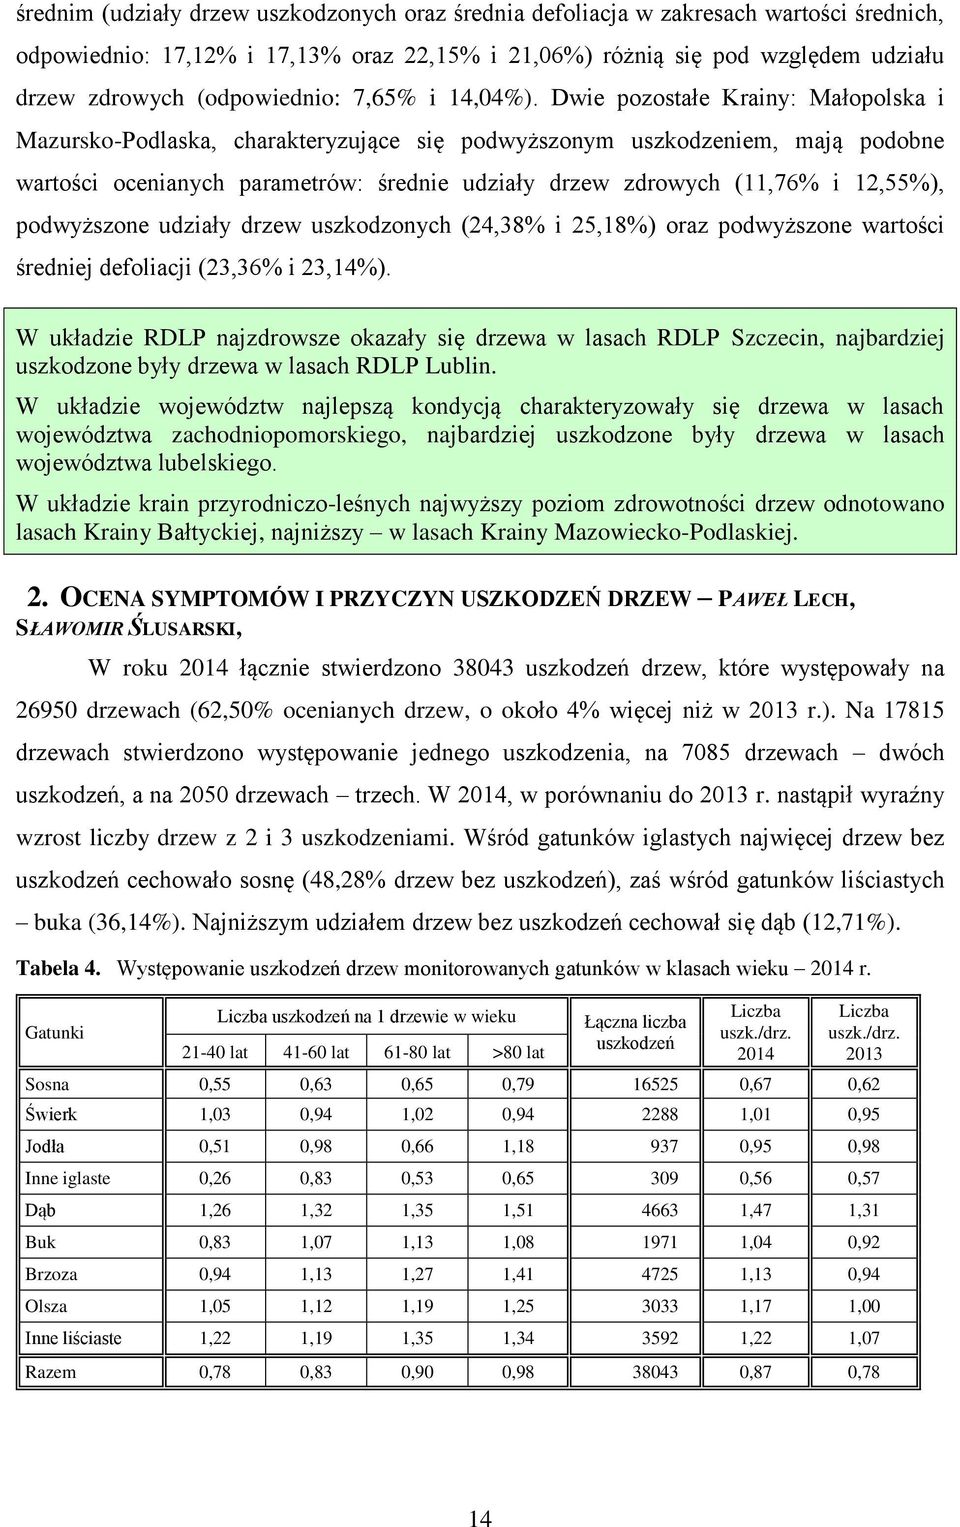 Dwie pozostałe Krainy: Małopolska i Mazursko-Podlaska, charakteryzujące się podwyższonym uszkodzeniem, mają podobne wartości ocenianych parametrów: średnie udziały drzew zdrowych (11,76% i 12,55%),